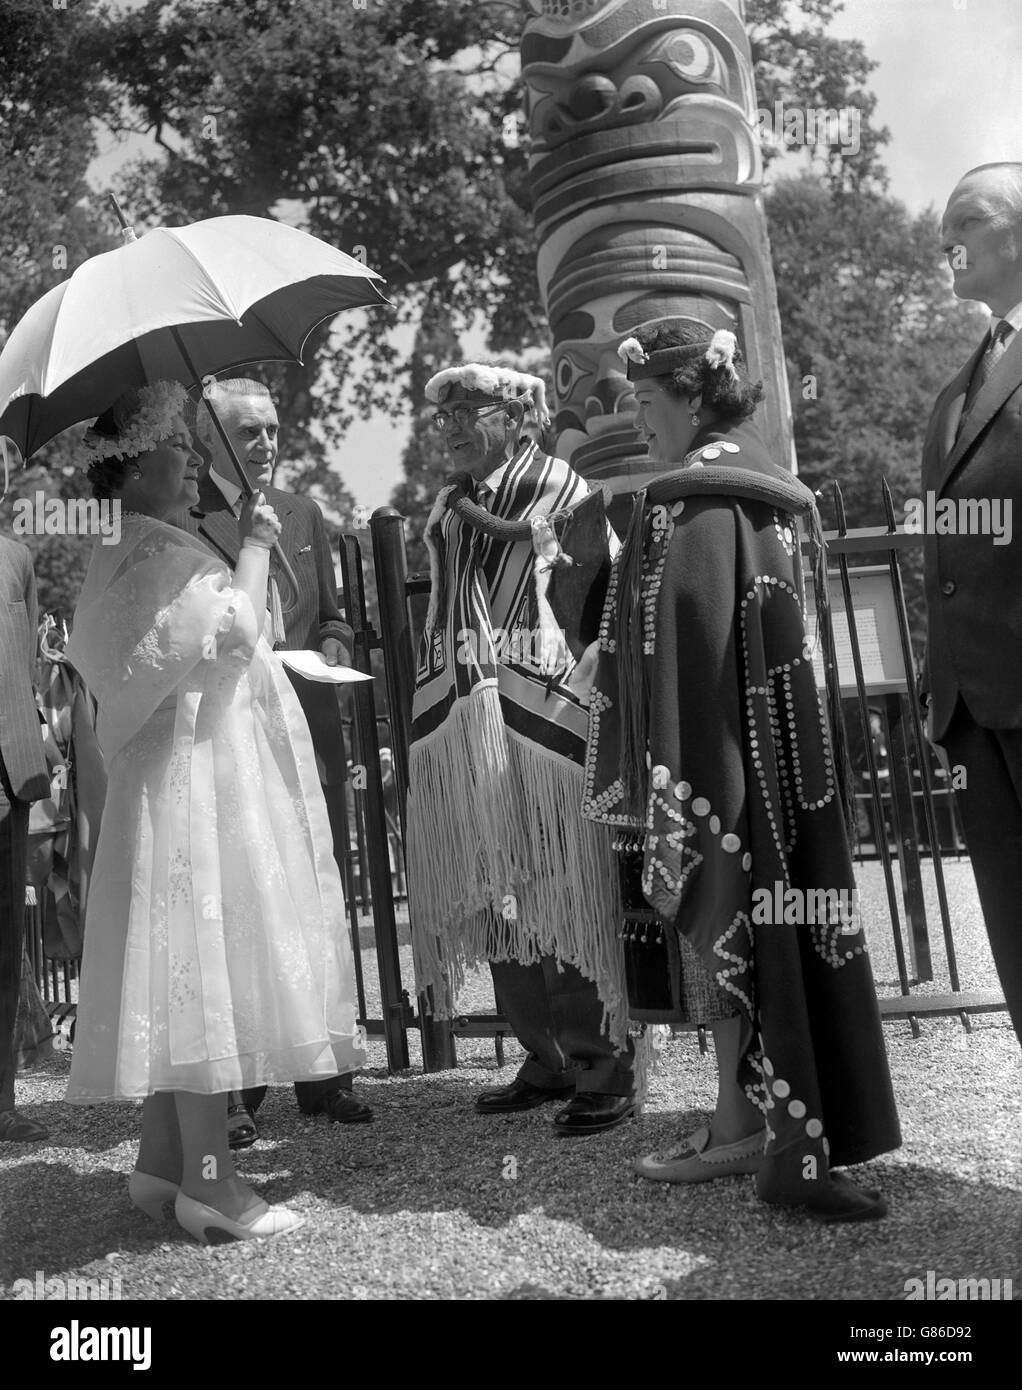 La reine Elizabeth la reine mère, qui était députrice de la reine Elizabeth II, s'entretient avec le chef Mungo Martin et sa petite-fille, Helen Hunt, après avoir reçu le totem de 100 pieds, un cadeau de la Colombie-Britannique, dans le Grand parc de Windsor. Le chef Mungo Martin, des Indiens Kwakiutl, une tribu située sur l'île de Vancouver, a sculpté l'ornementation élaborée sur le poteau de 12 tonnes. Le cadeau de totem à la reine Elizabeth II marque le centenaire de la Colombie-Britannique. Banque D'Images